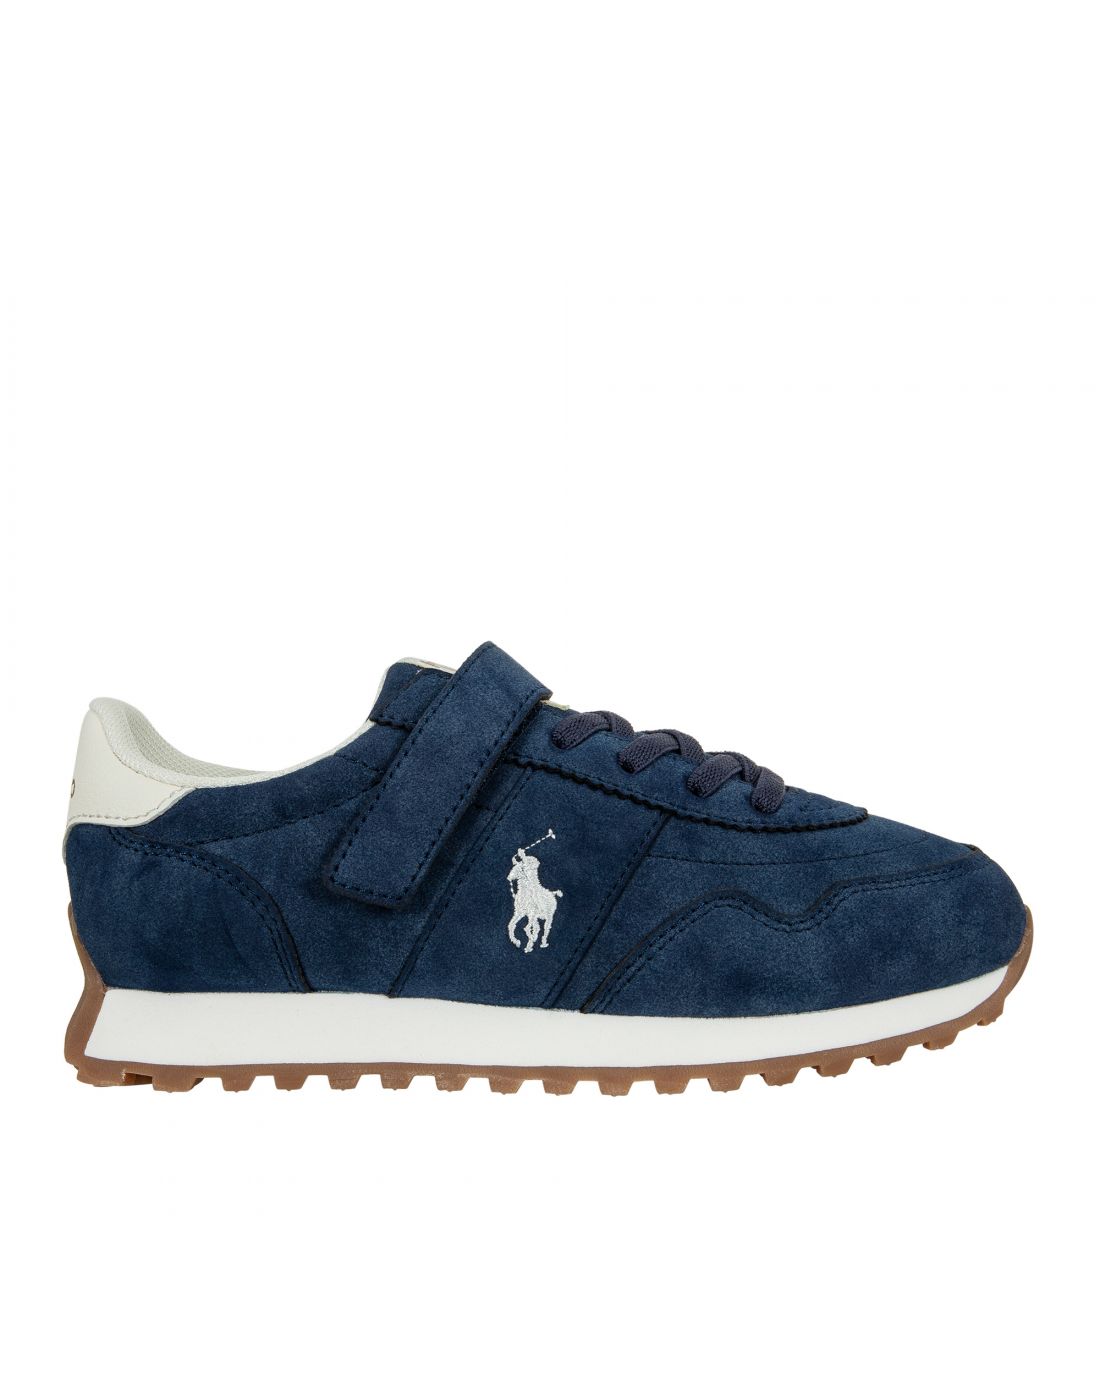 Παιδικά Παπούτσια Sneakers Polo Ralph Lauren, Polo Ralph Lauren, 23265388 |  LapinKids.com | LAPIN KIDS